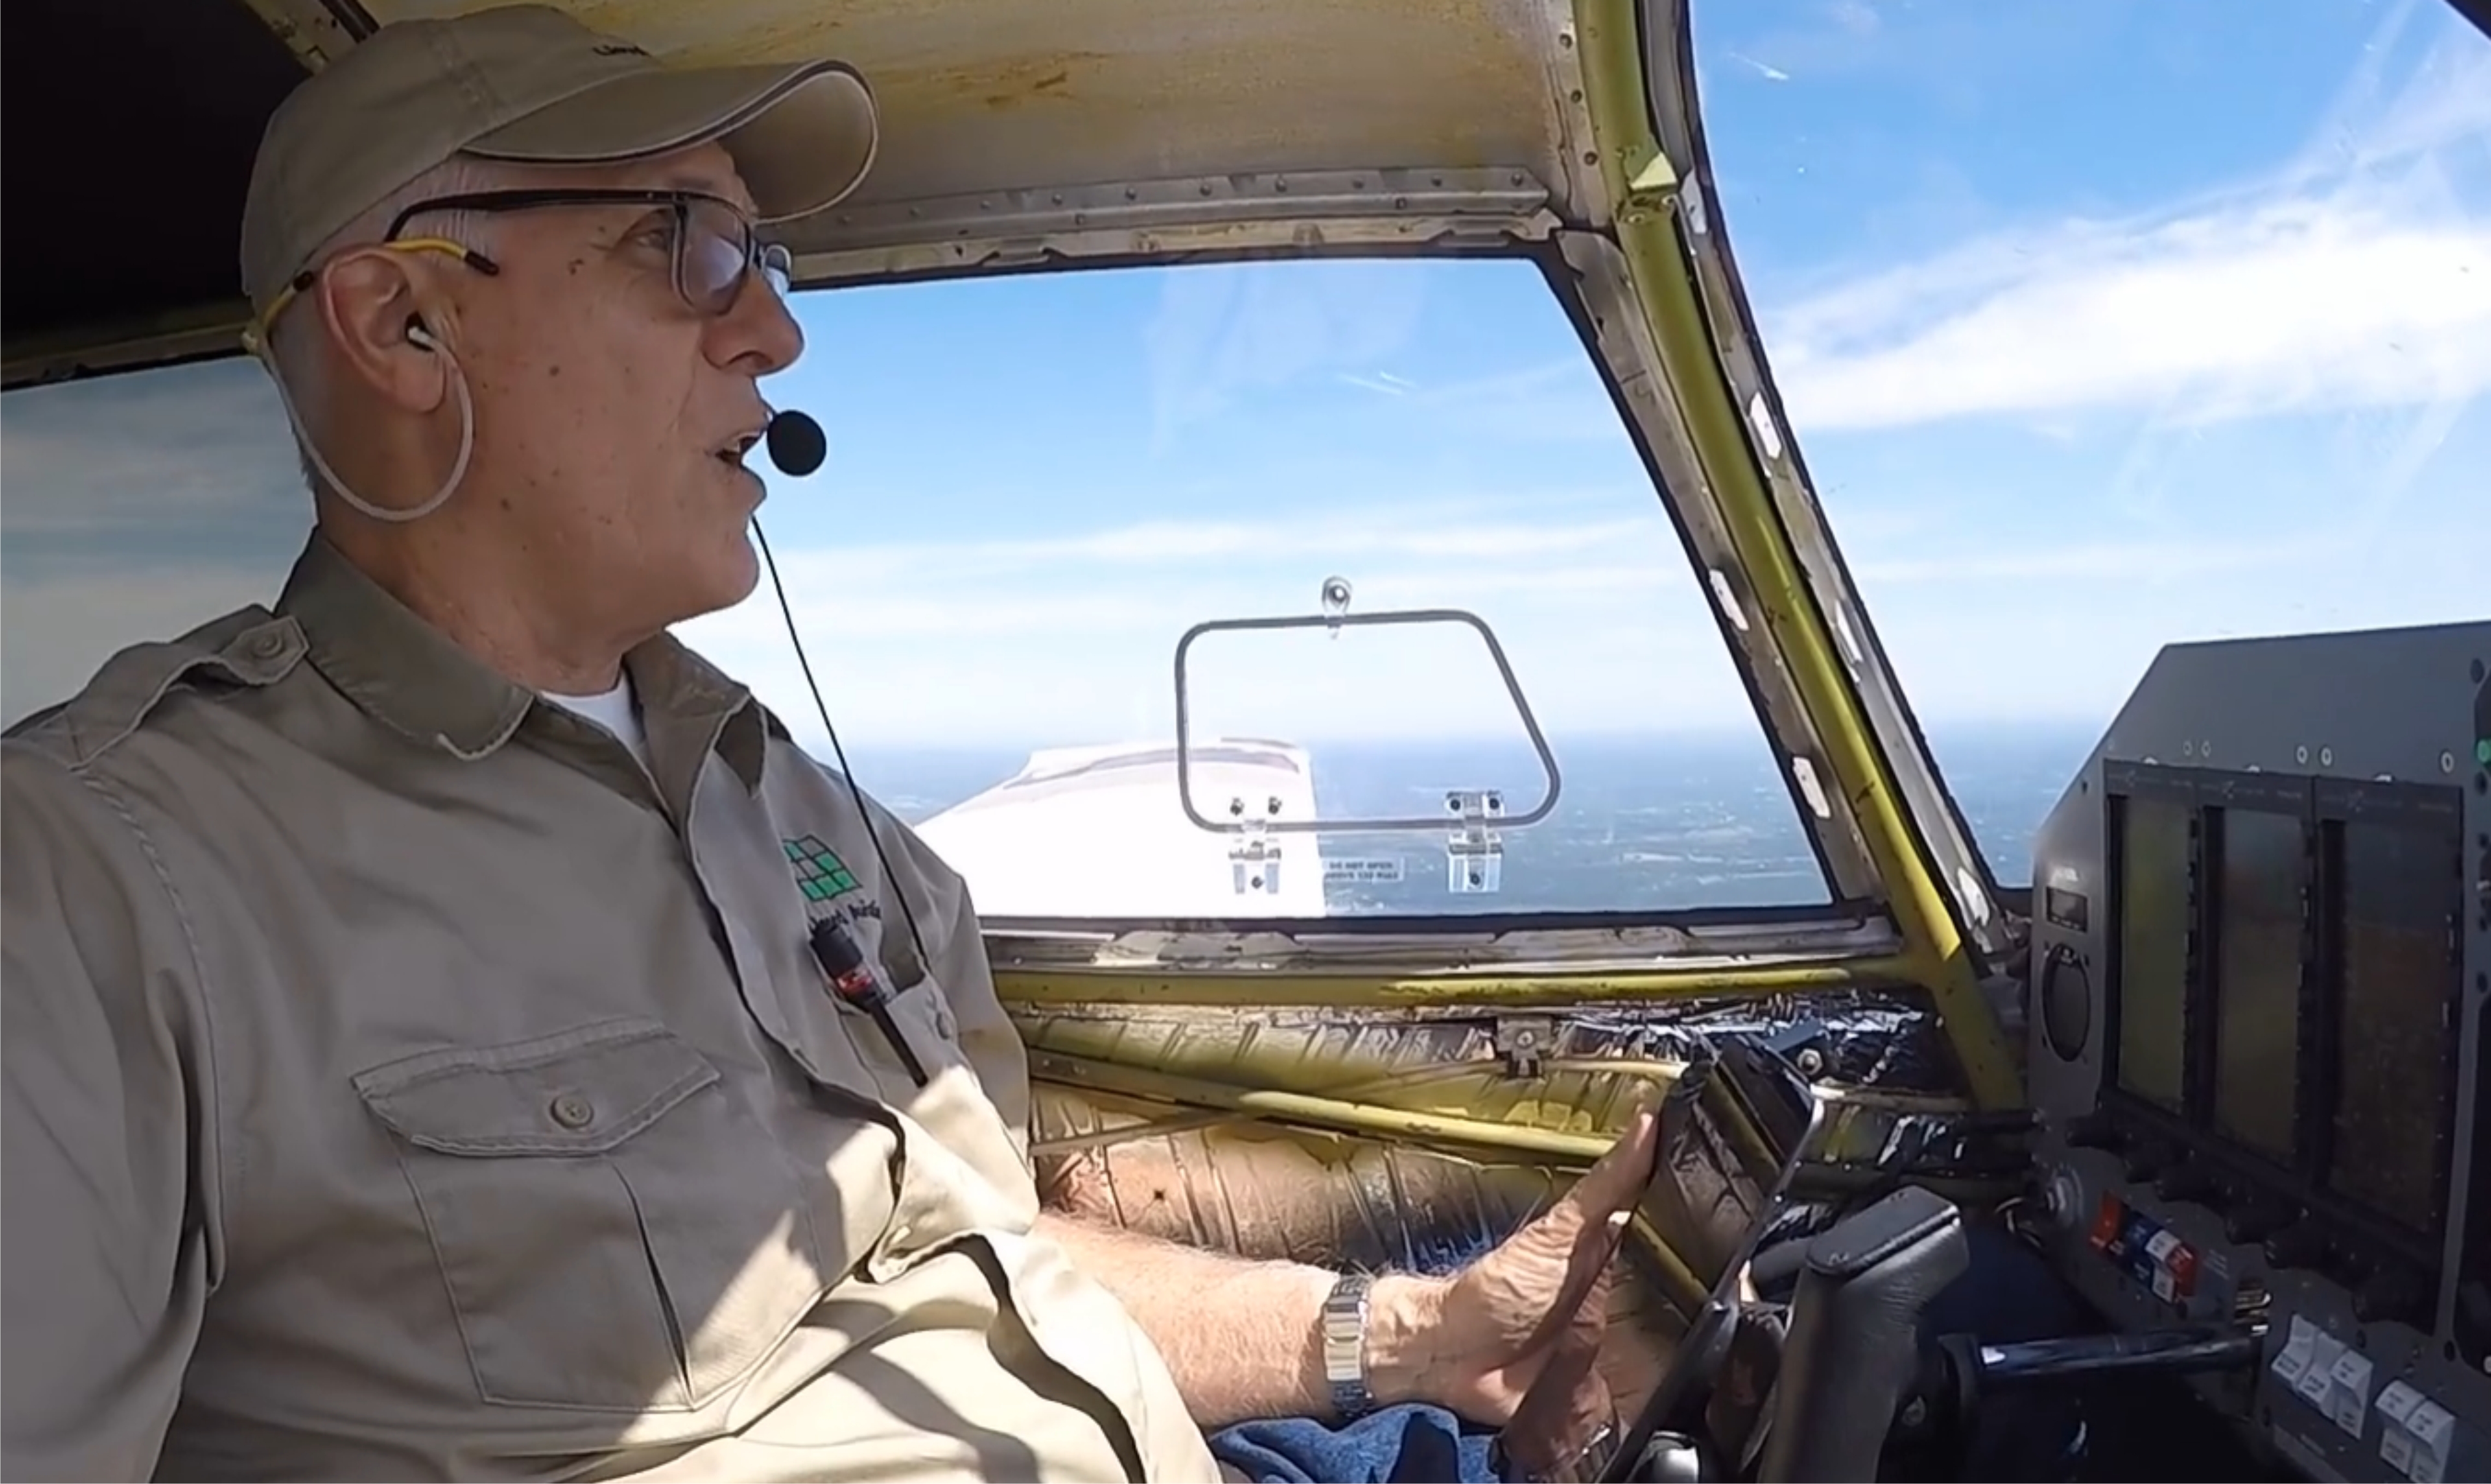 Brian Lloyd flies his airplane Spirit during a test flight above Texas, USA